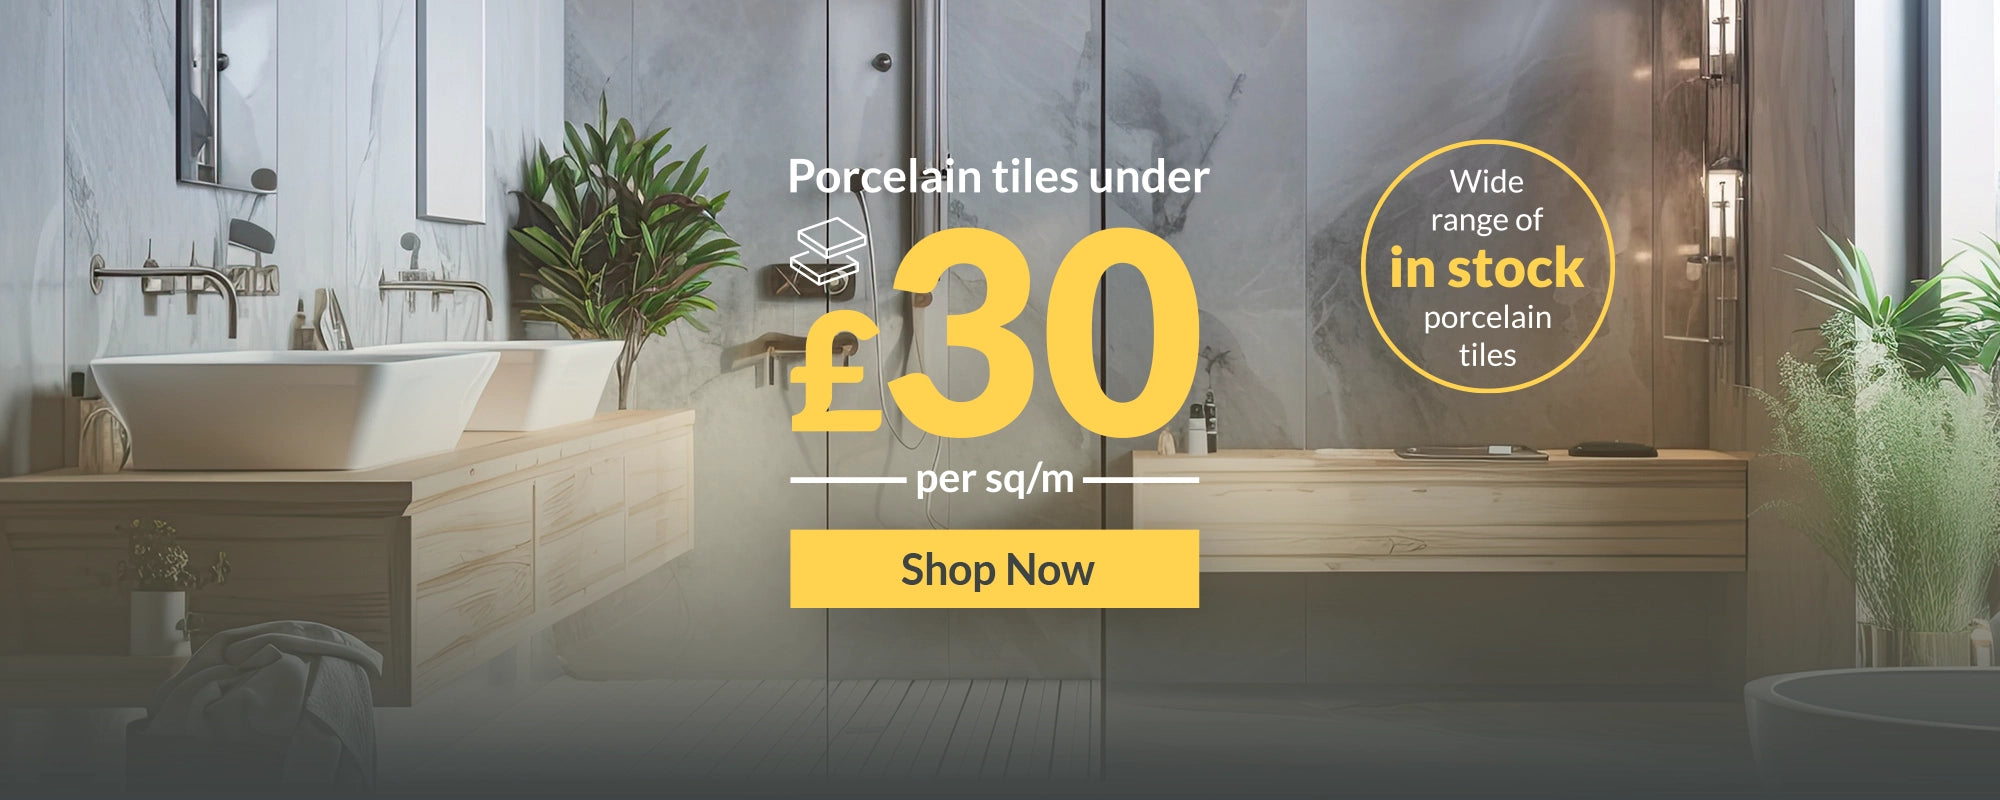 Porcelain Tiles Under £30 Per SQM